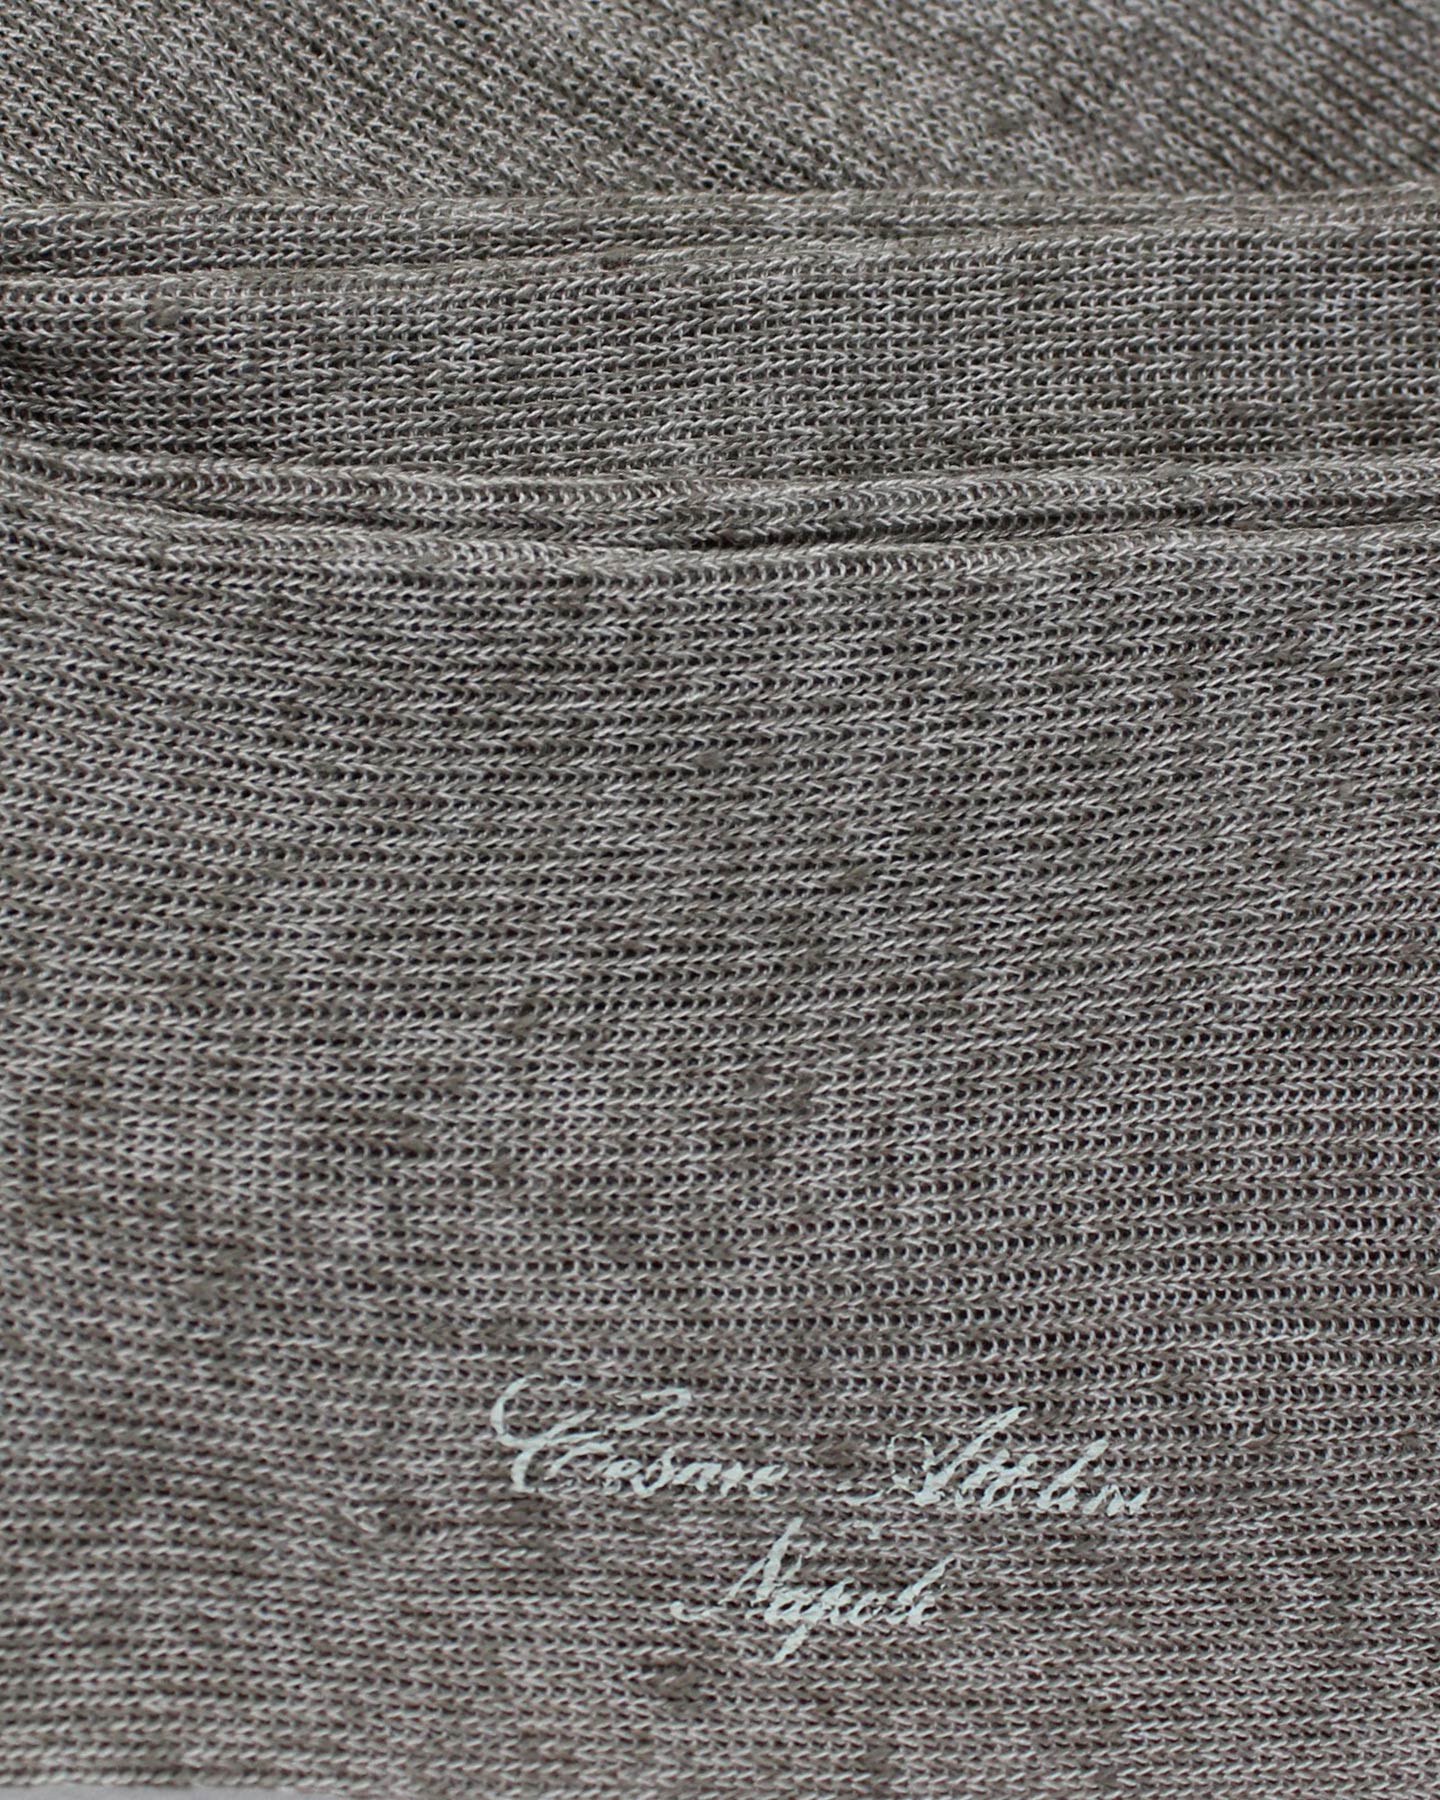 Attolini Gray Socks Linen Cotton